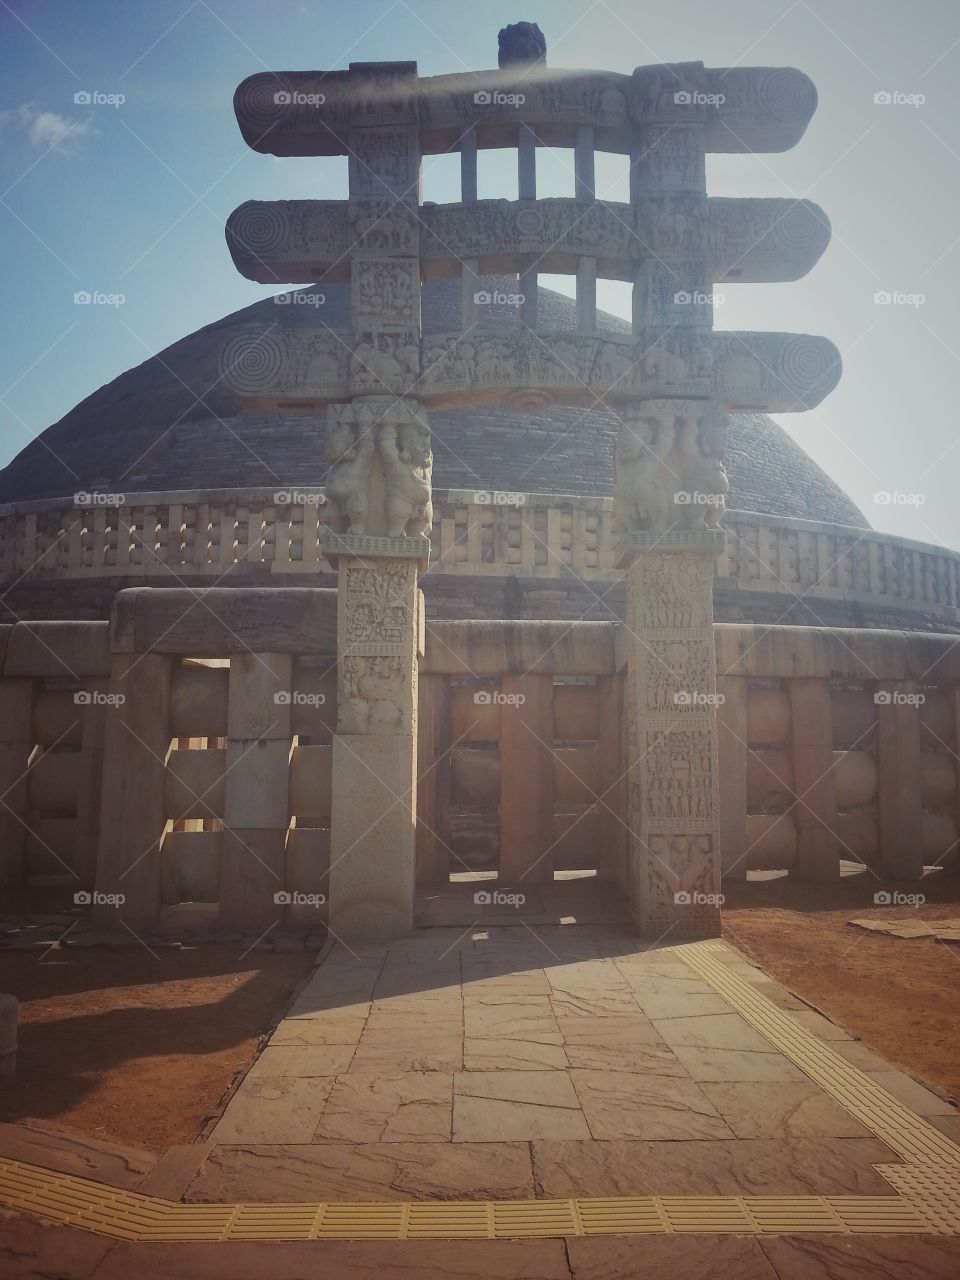 Ancient Buddhist architecture stupa.